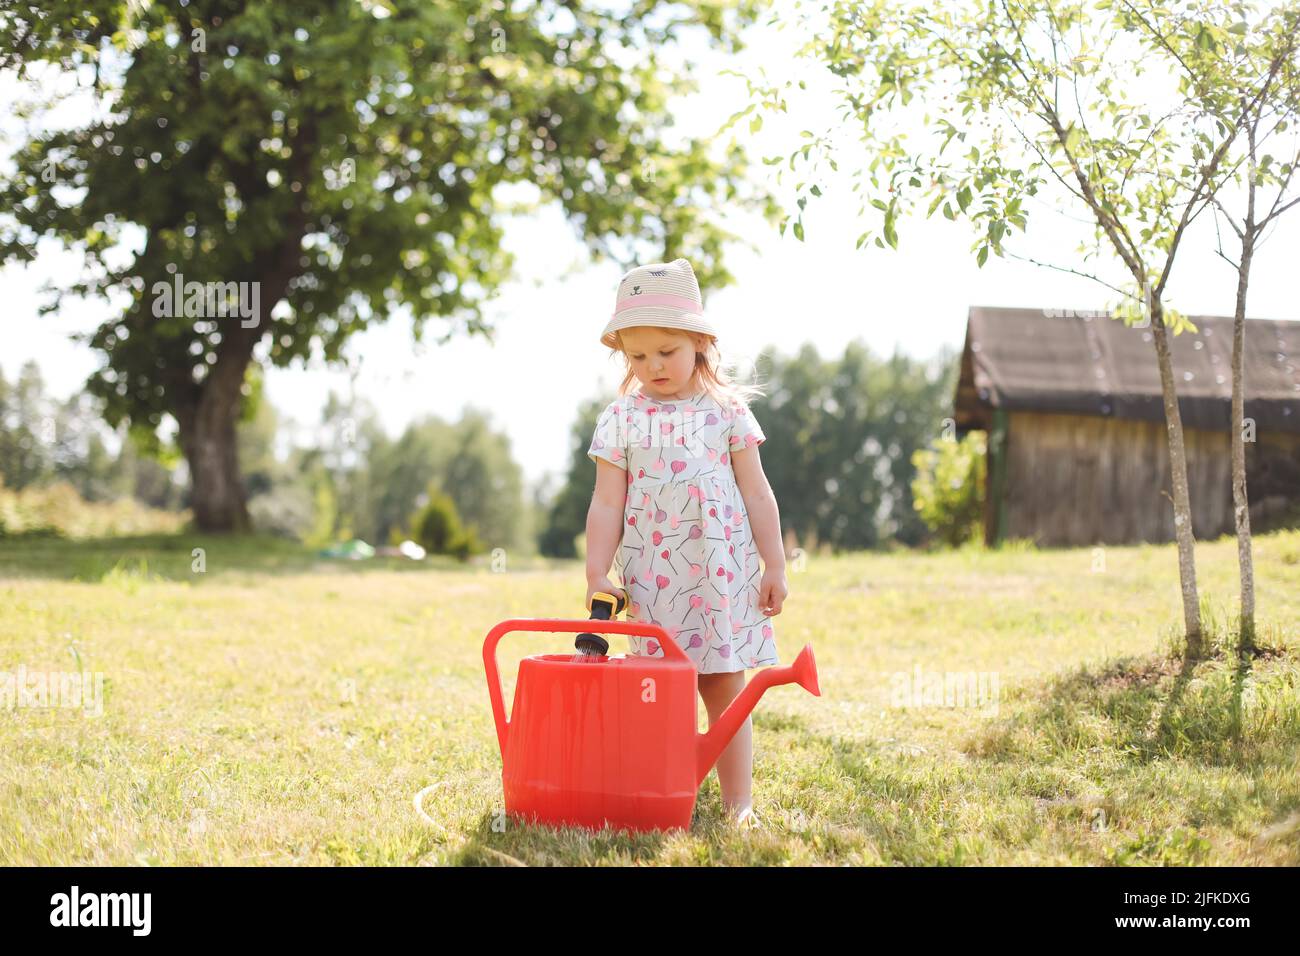 Ein kleines niedliches Baby Mädchen 3-4 Jahre alt in einem Kleid, das die Pflanzen aus einer Gießkannen im Garten wässert. Kinder haben Spaß beim Gartenarbeiten auf einem hellen sonnigen Stockfoto